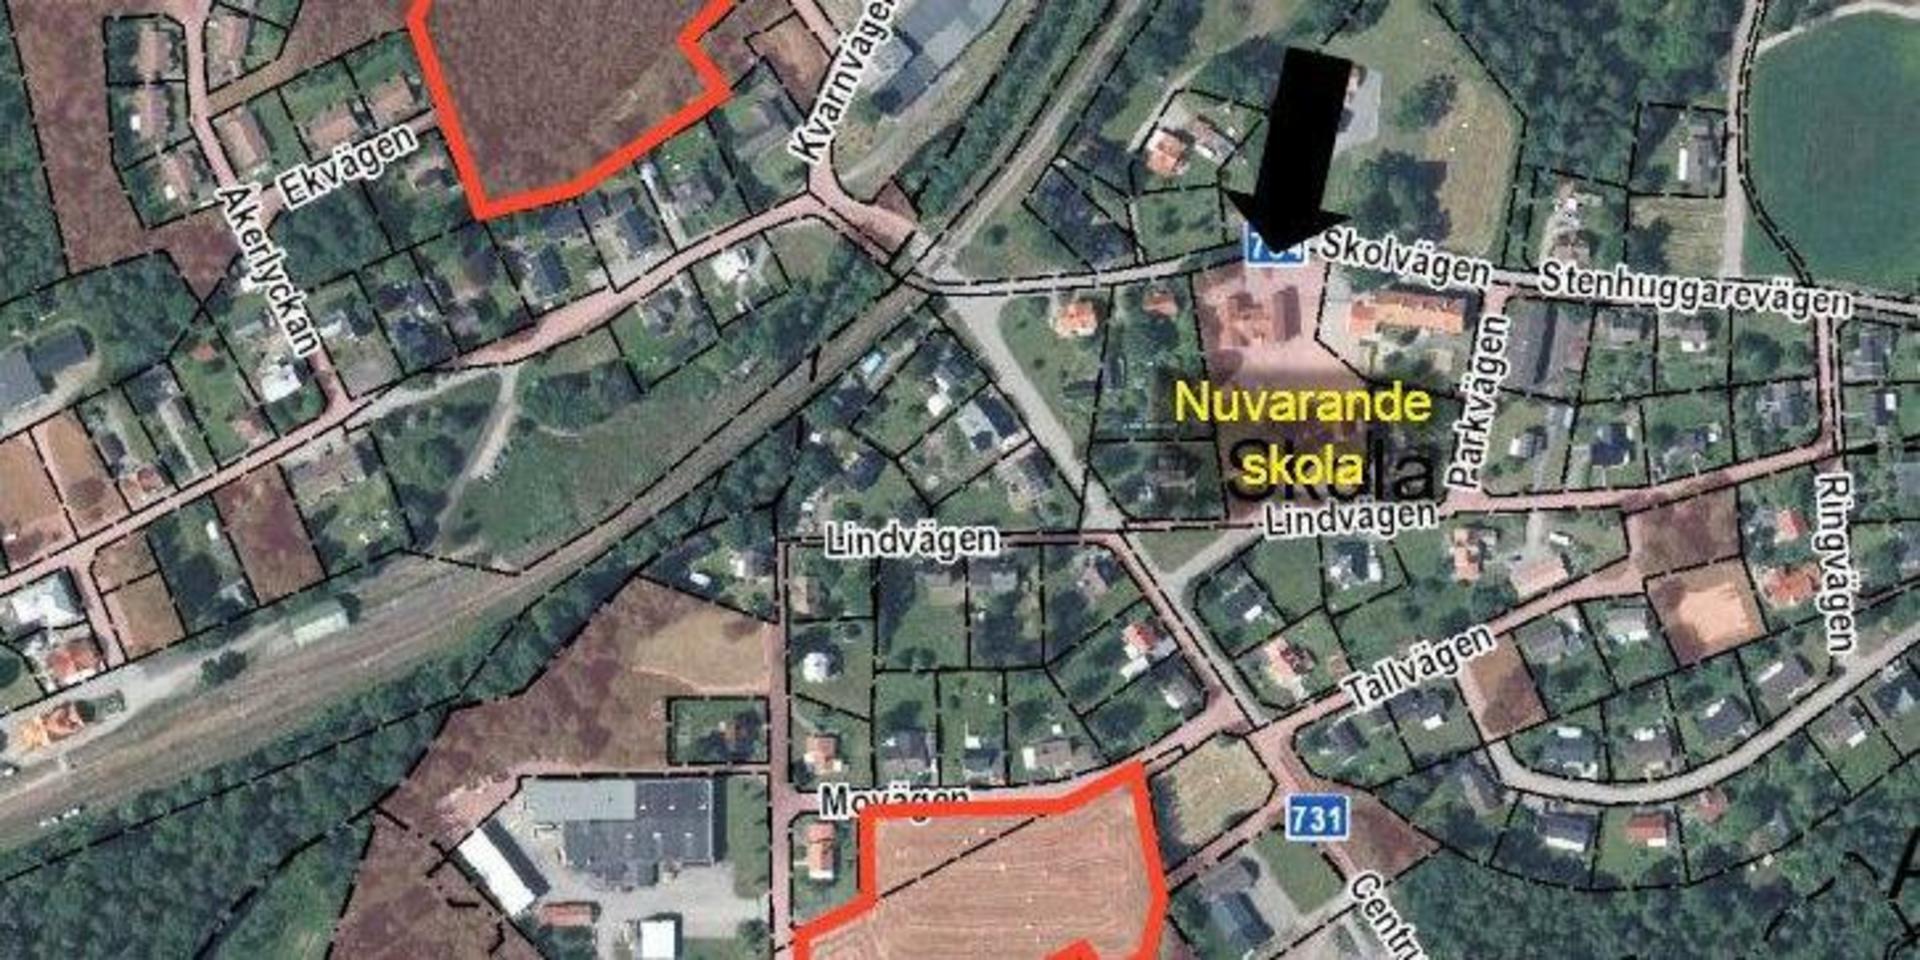 Två kommunägda fastigheter, vid gamla Preconal (numera OGM AB) respektive vid företaget Esskå, har pekats ut som lämpliga för en skola men är dock inte detaljplanerade för skolverksamhet. Fastigheterna är rödmarkerade på kartan.